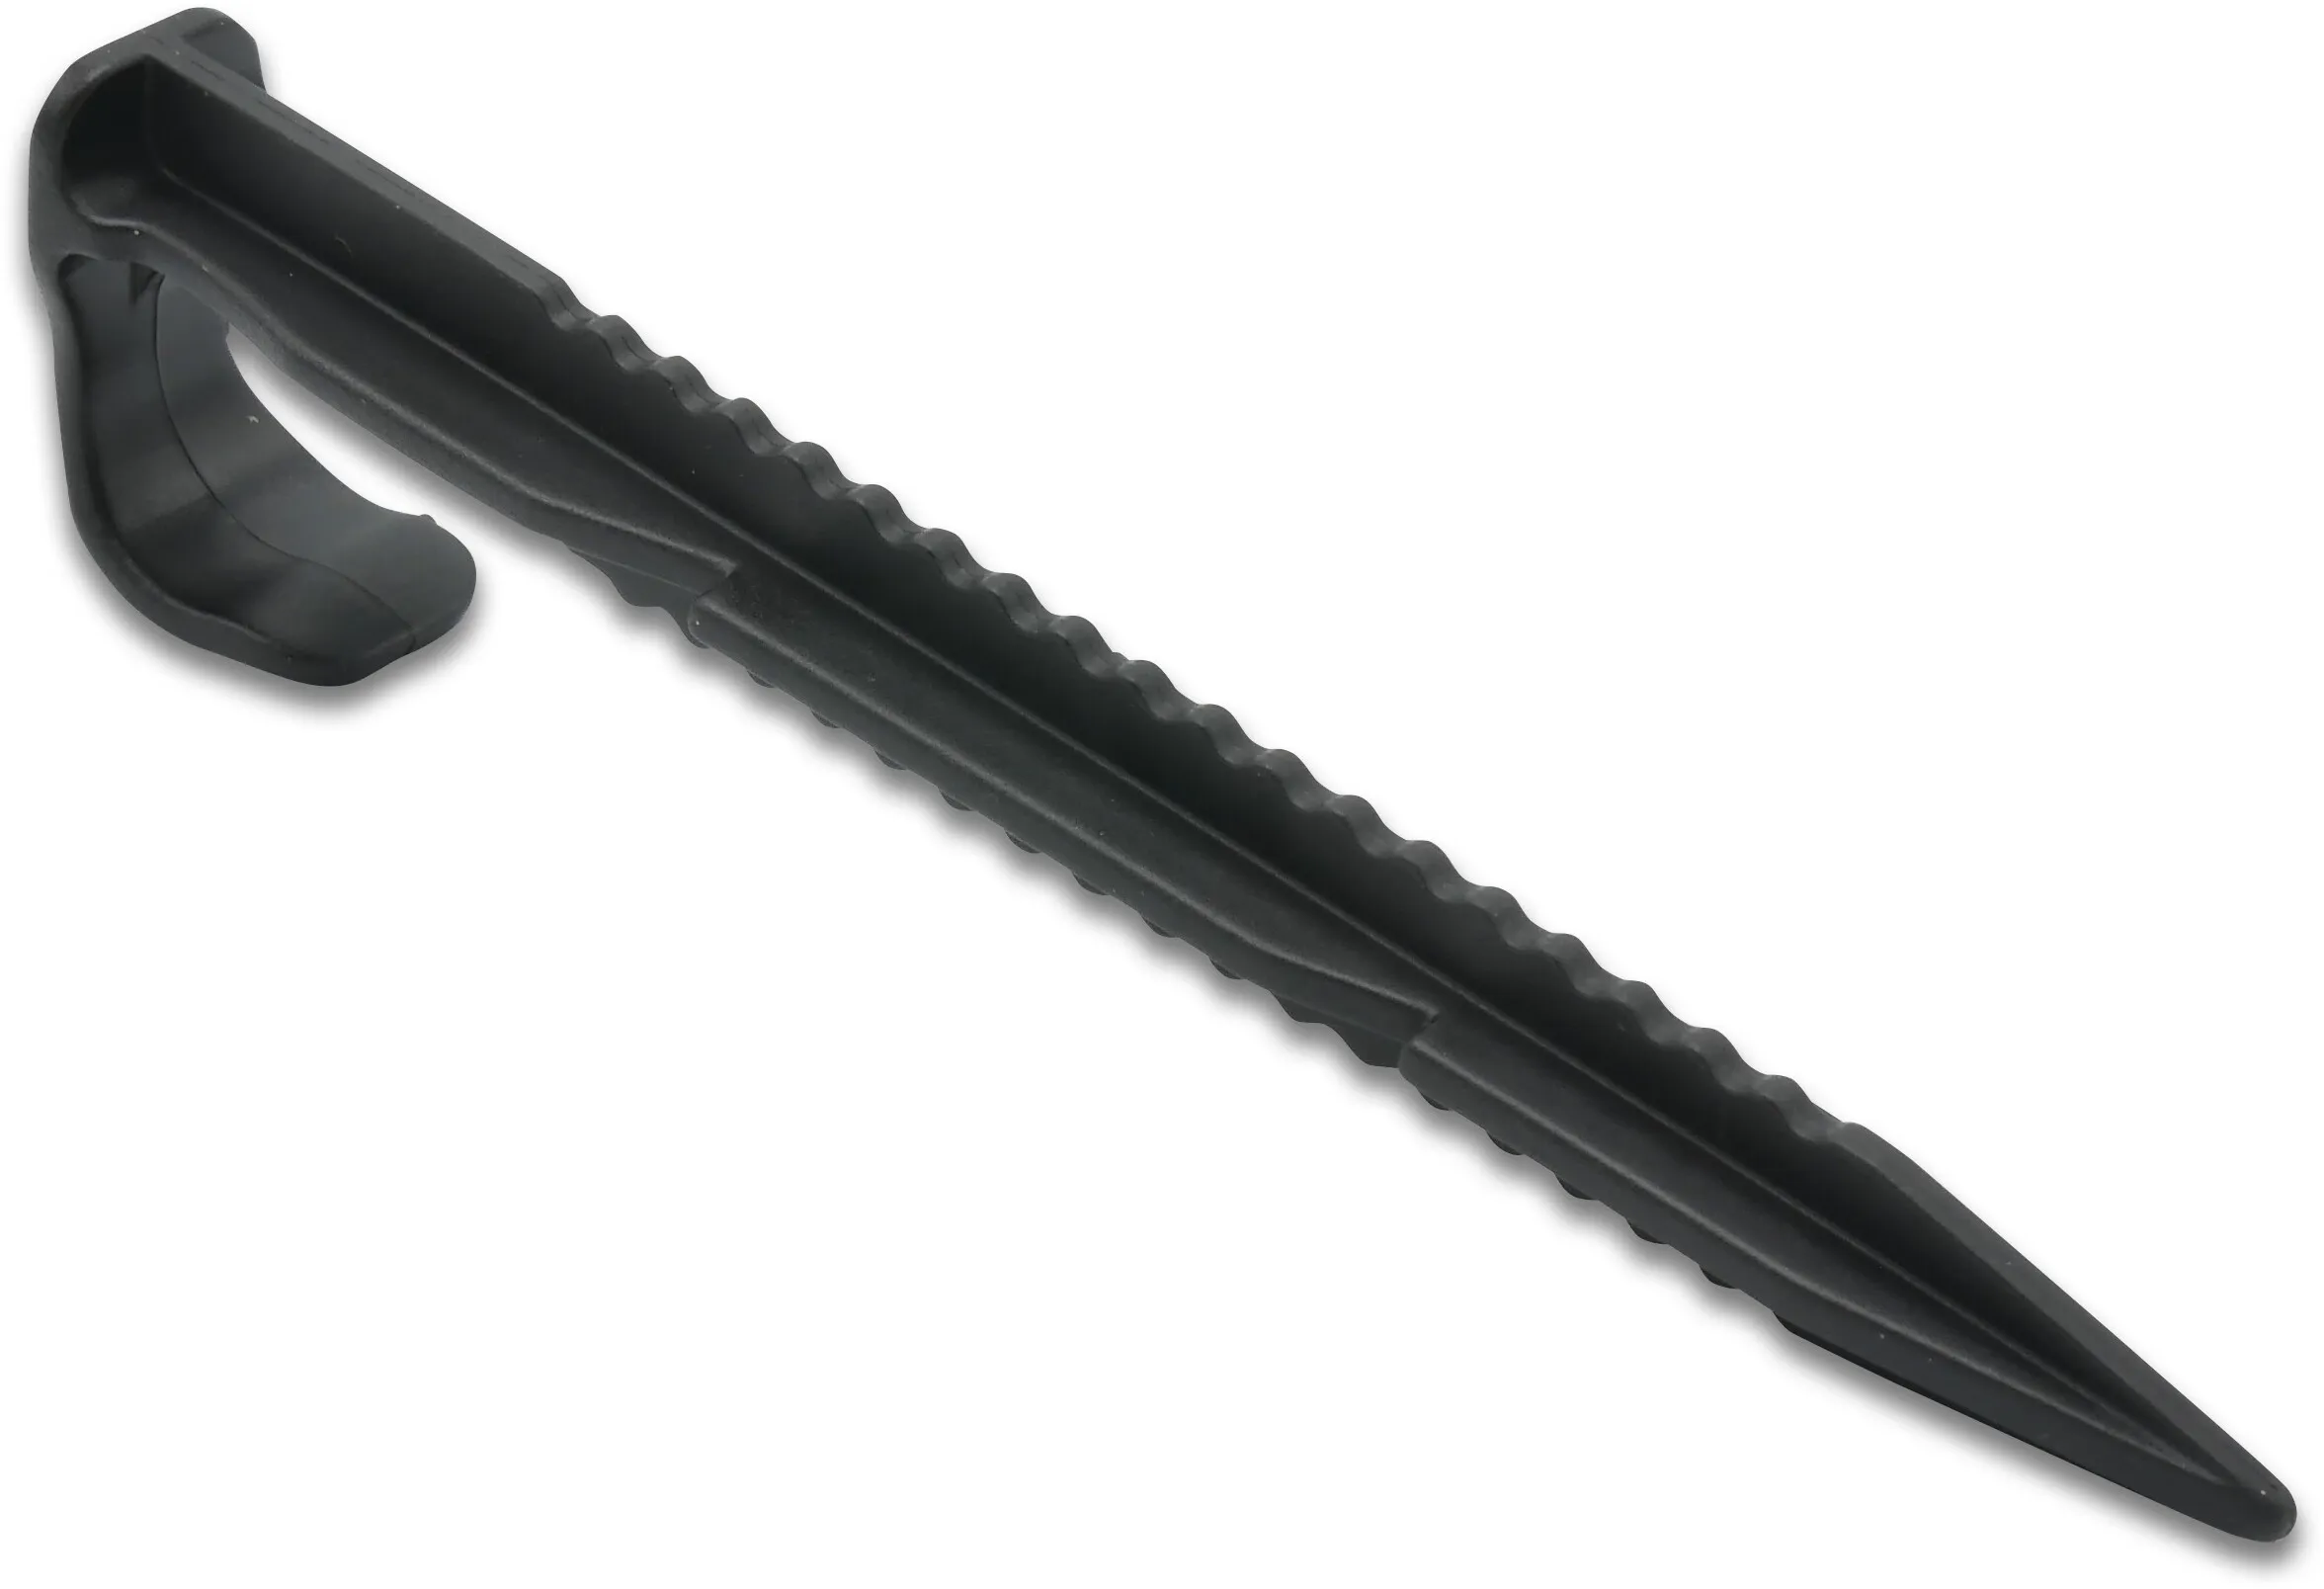 Szpilka do linii kroplującej tworzywo sztuczne 16-20 mm 15cm czarny